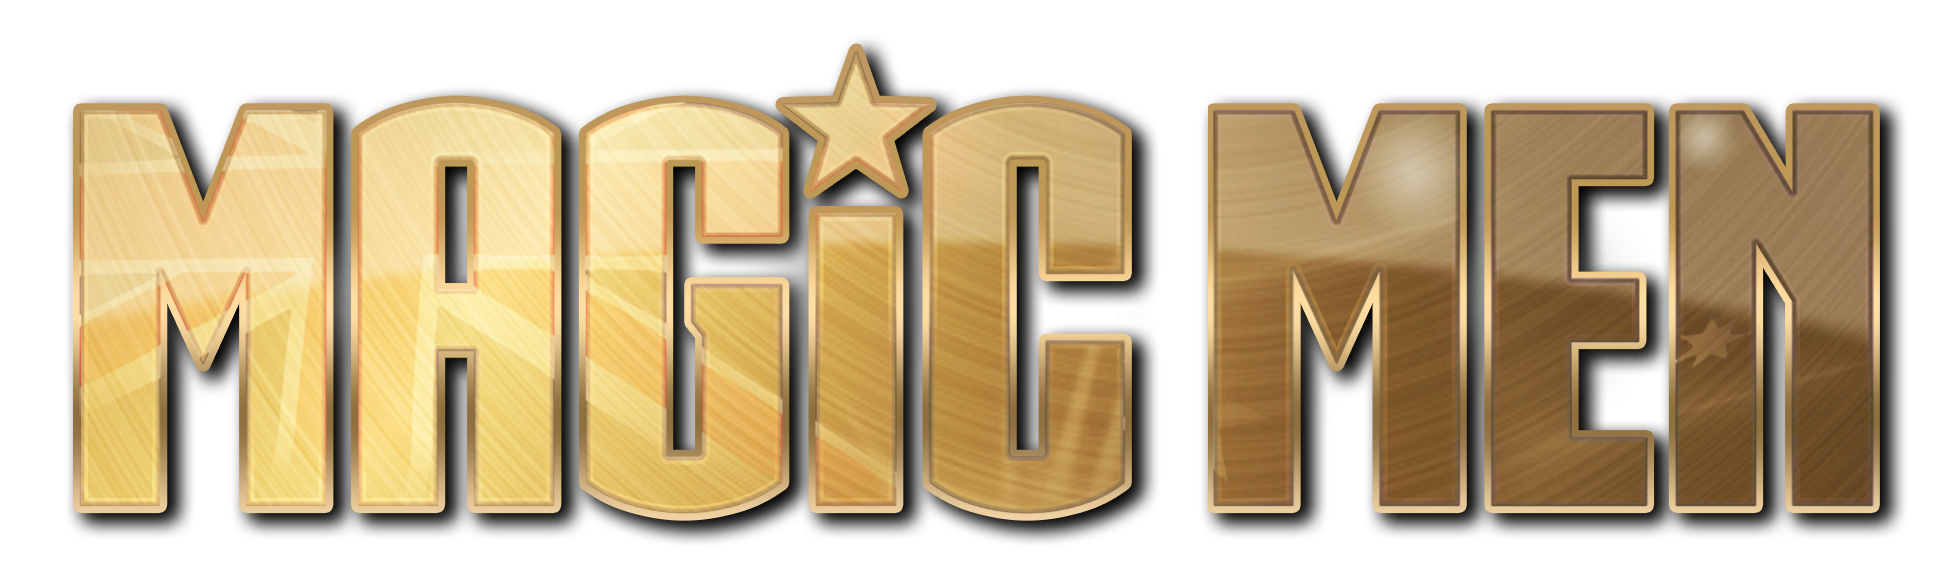 Magic-Men-Gold-Logo copy.png